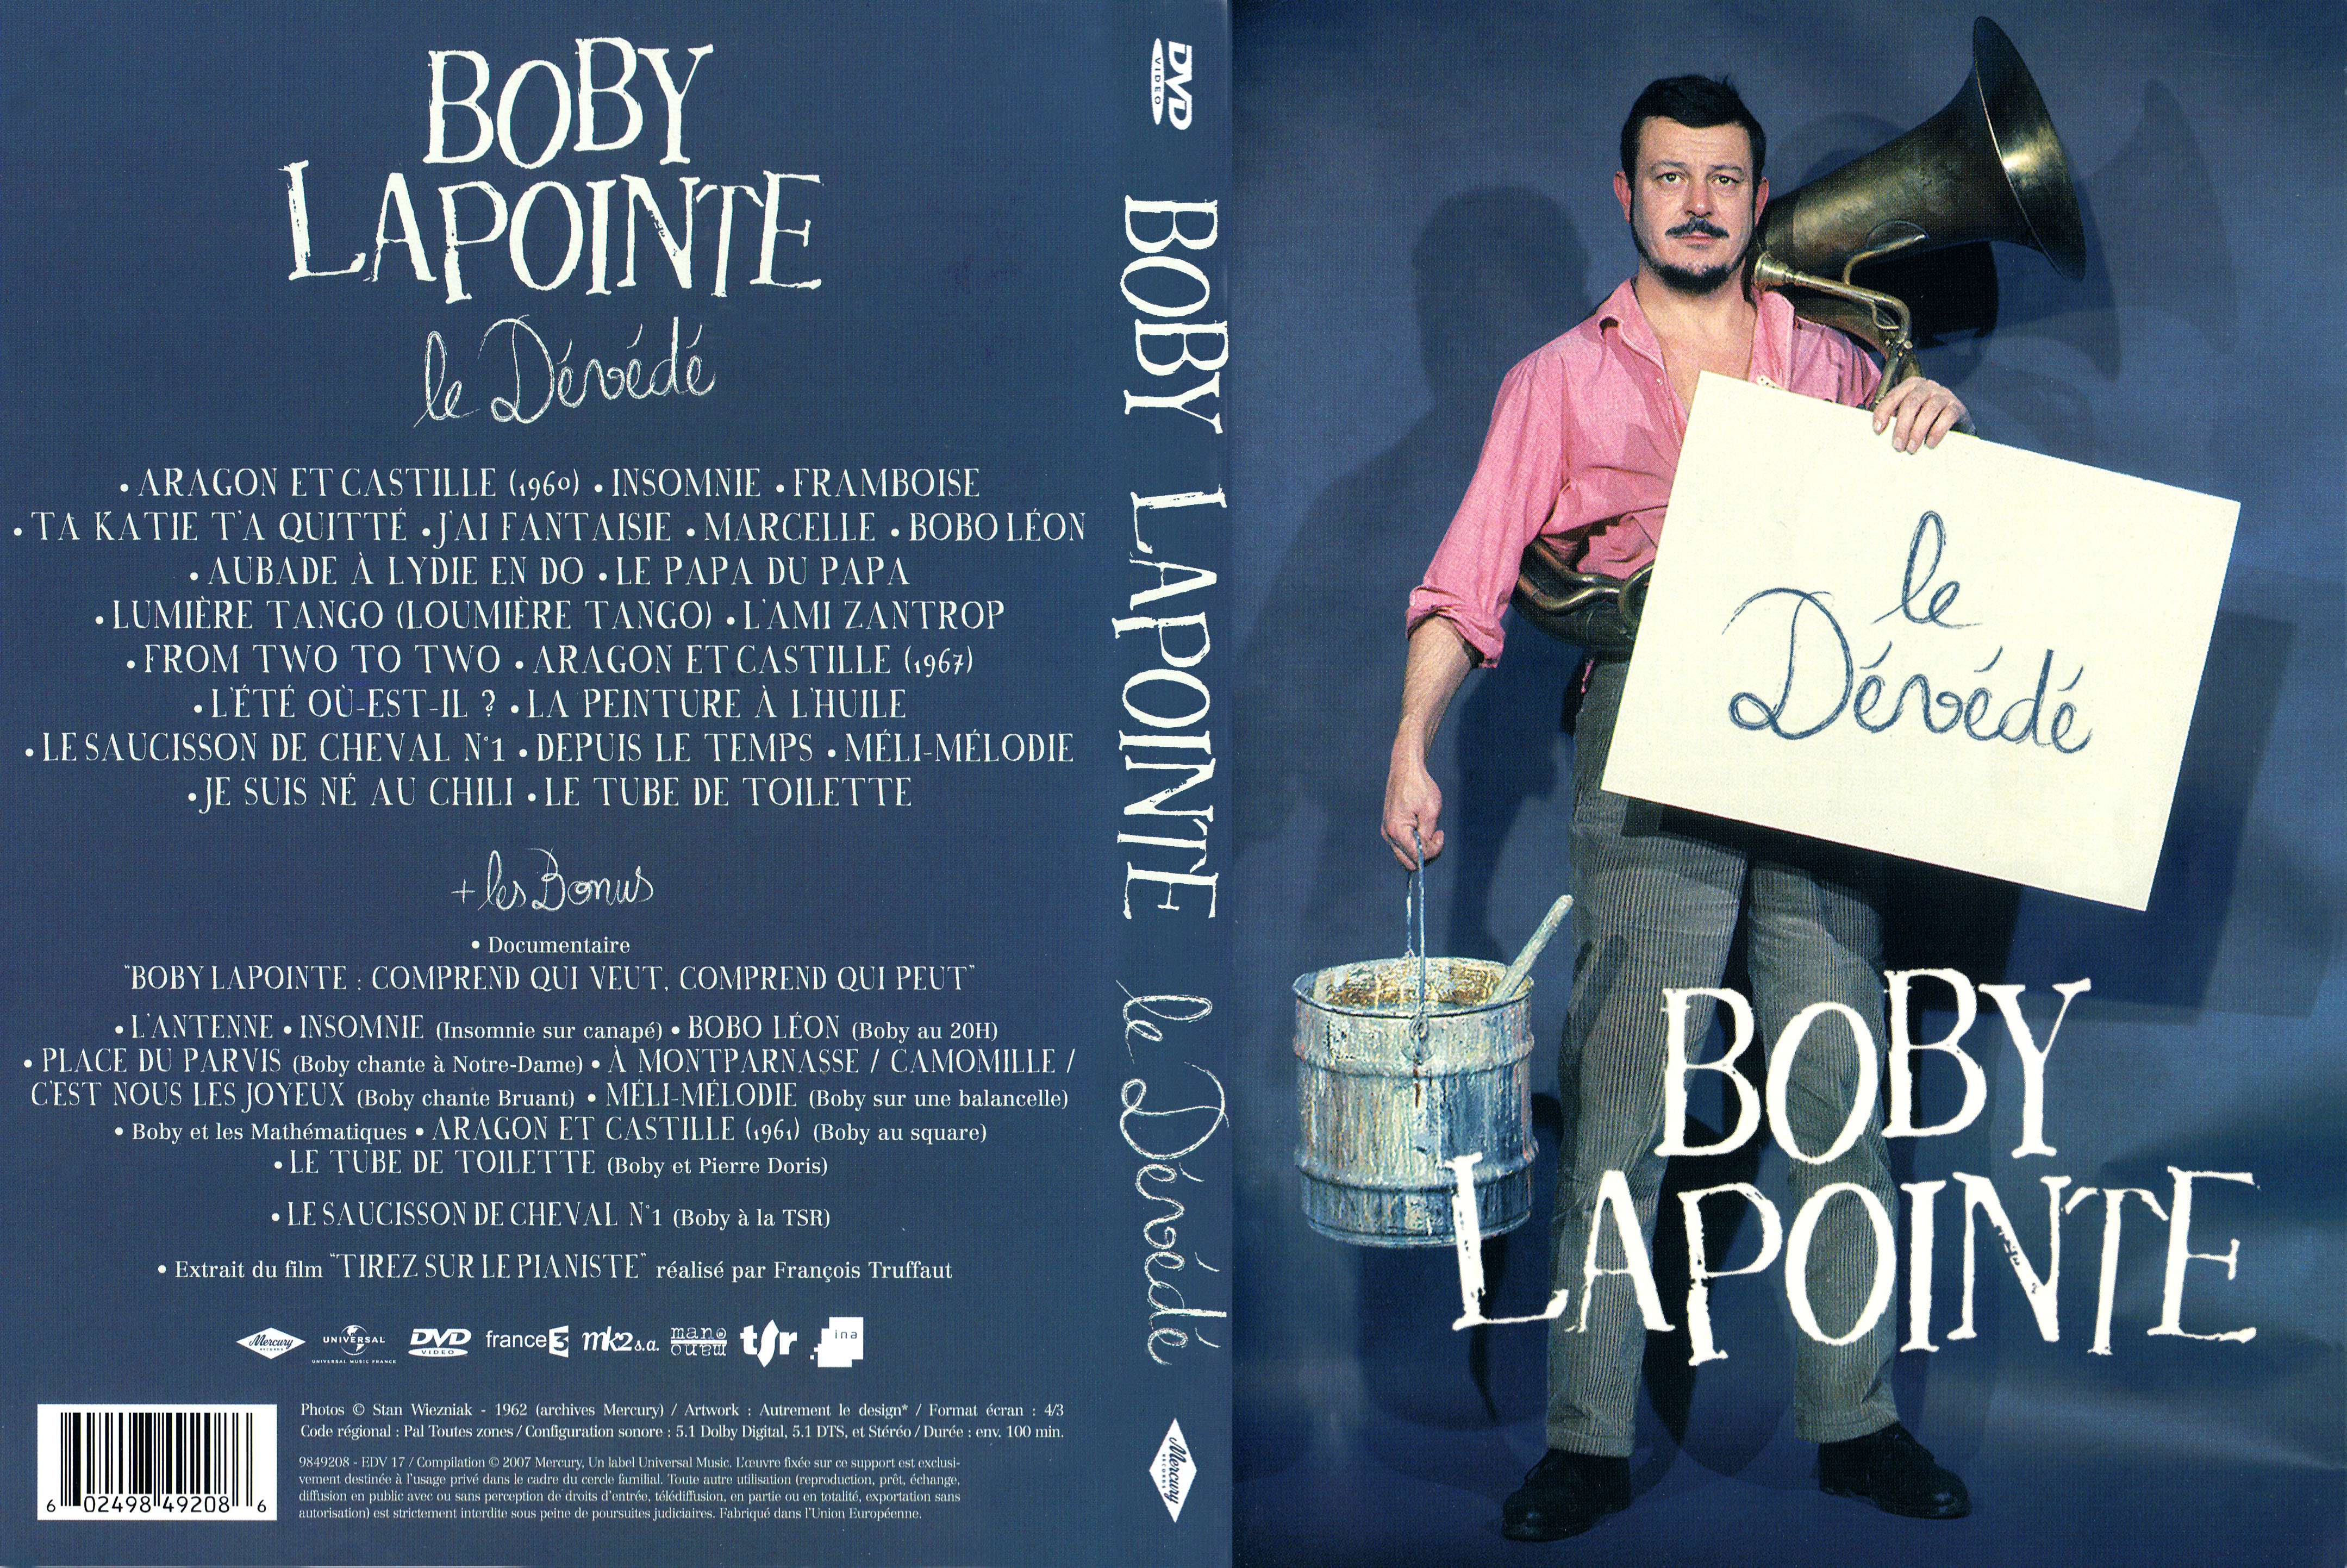 Jaquette DVD Boby Lapointe le dvd